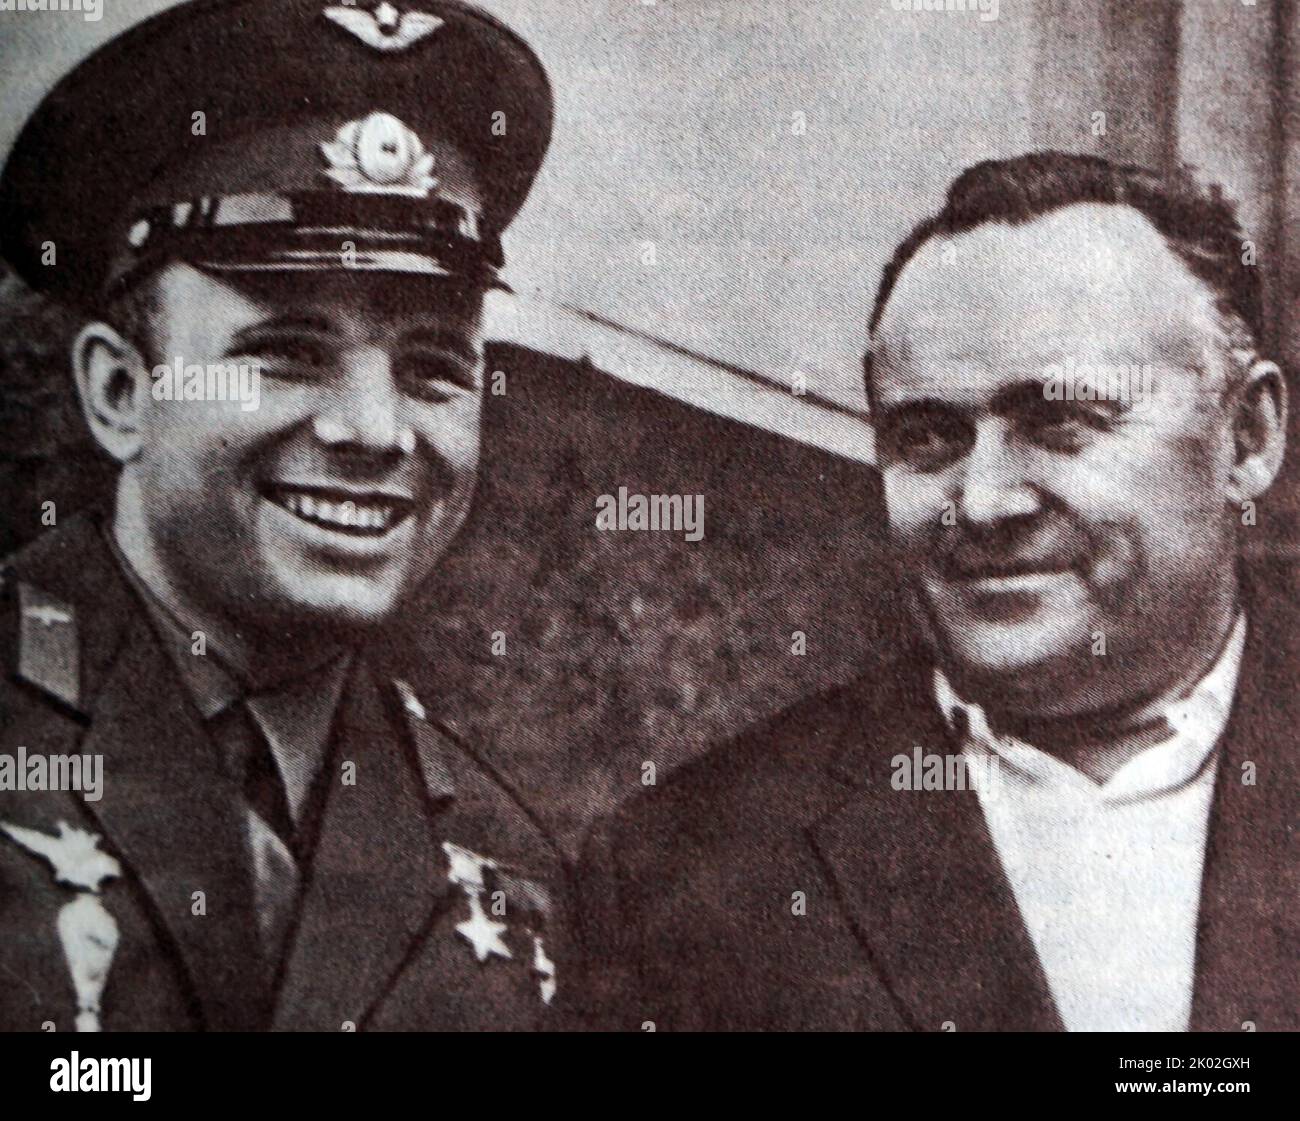 Der erste Kosmonaut Juri Gagarin und Chefkonstrukteur der Raumschiffe Sergei Korolev. Sergei Pawlowitsch Korolew (1907 - 1966) war ein leitender sowjetischer Raketeningenieur während des Weltraumrennens zwischen den Vereinigten Staaten und der Sowjetunion in den Jahren 1950s und 1960s. Er wird von vielen als der Vater der praktischen Raumfahrt angesehen Stockfoto